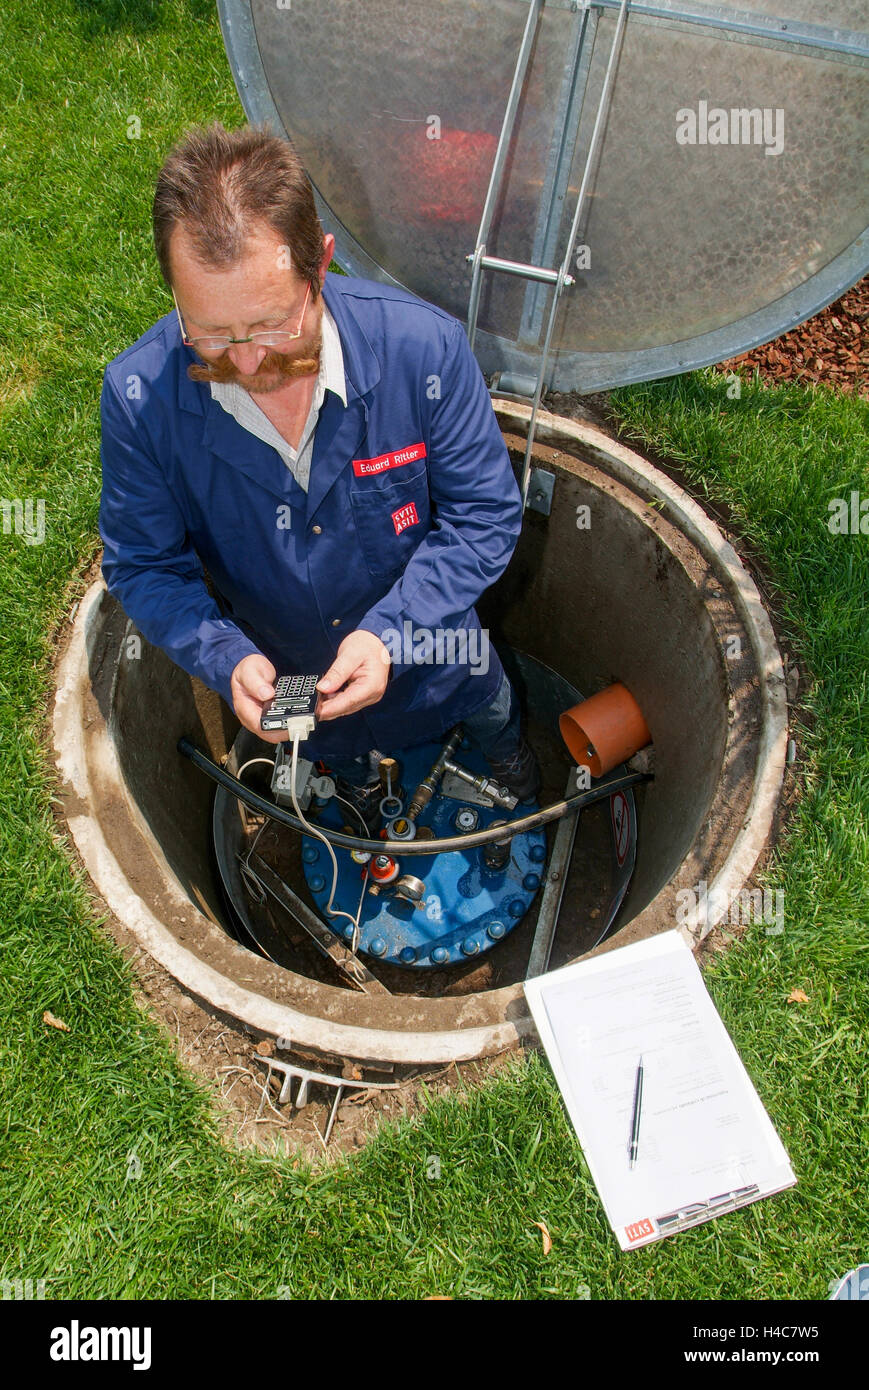 Lugano, Suisse - 3 juin 2005 : Technicien en facilitant la maintenance à un réservoir de gaz sur le jardin d'une maison Banque D'Images